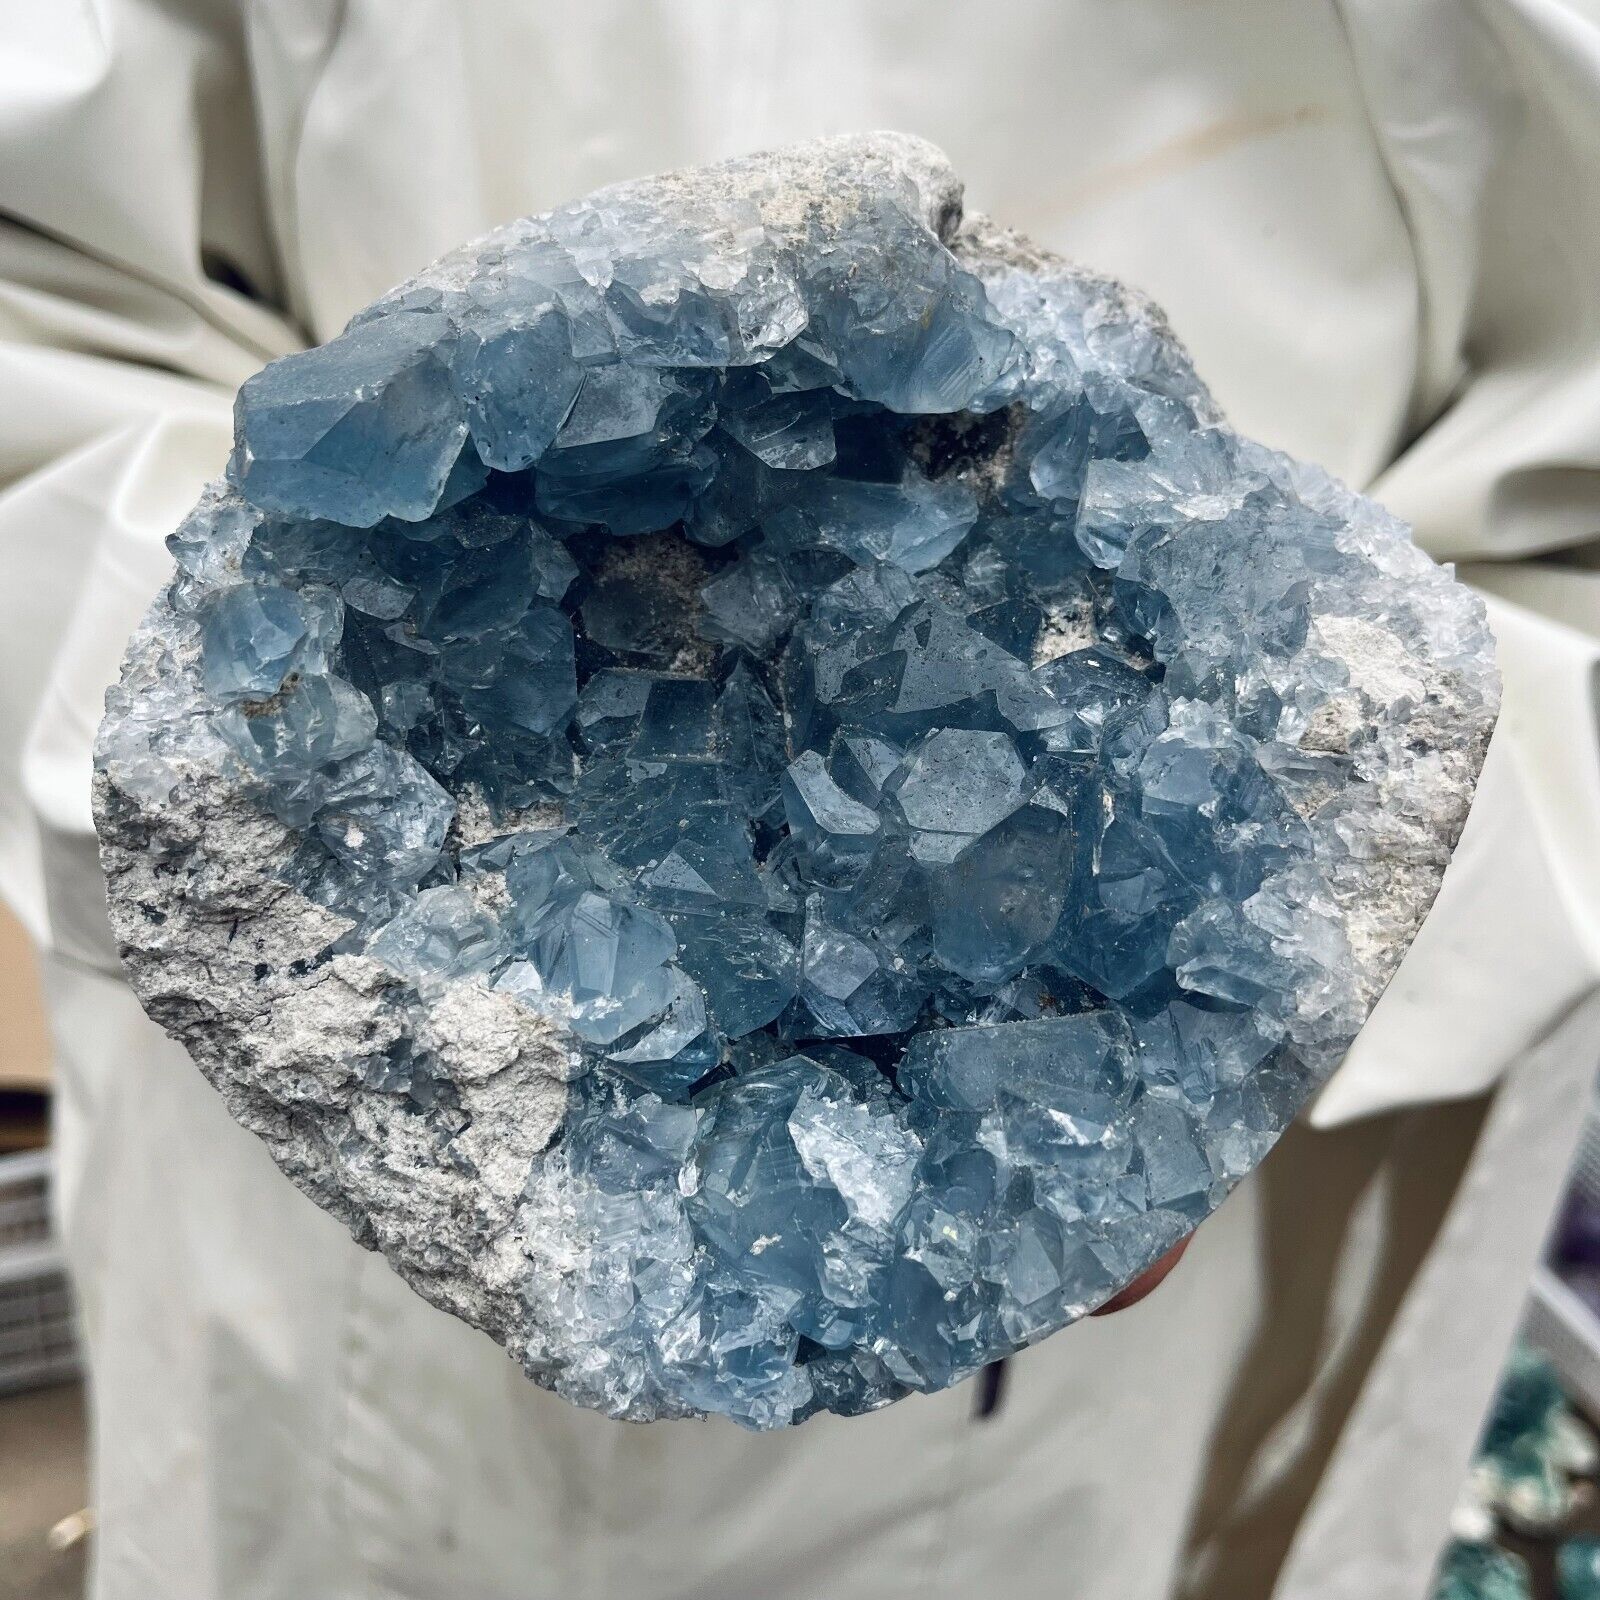 5.2lb Large Natural Blue Celestite Crystal Geode Quartz Cluster Mineral Specimen